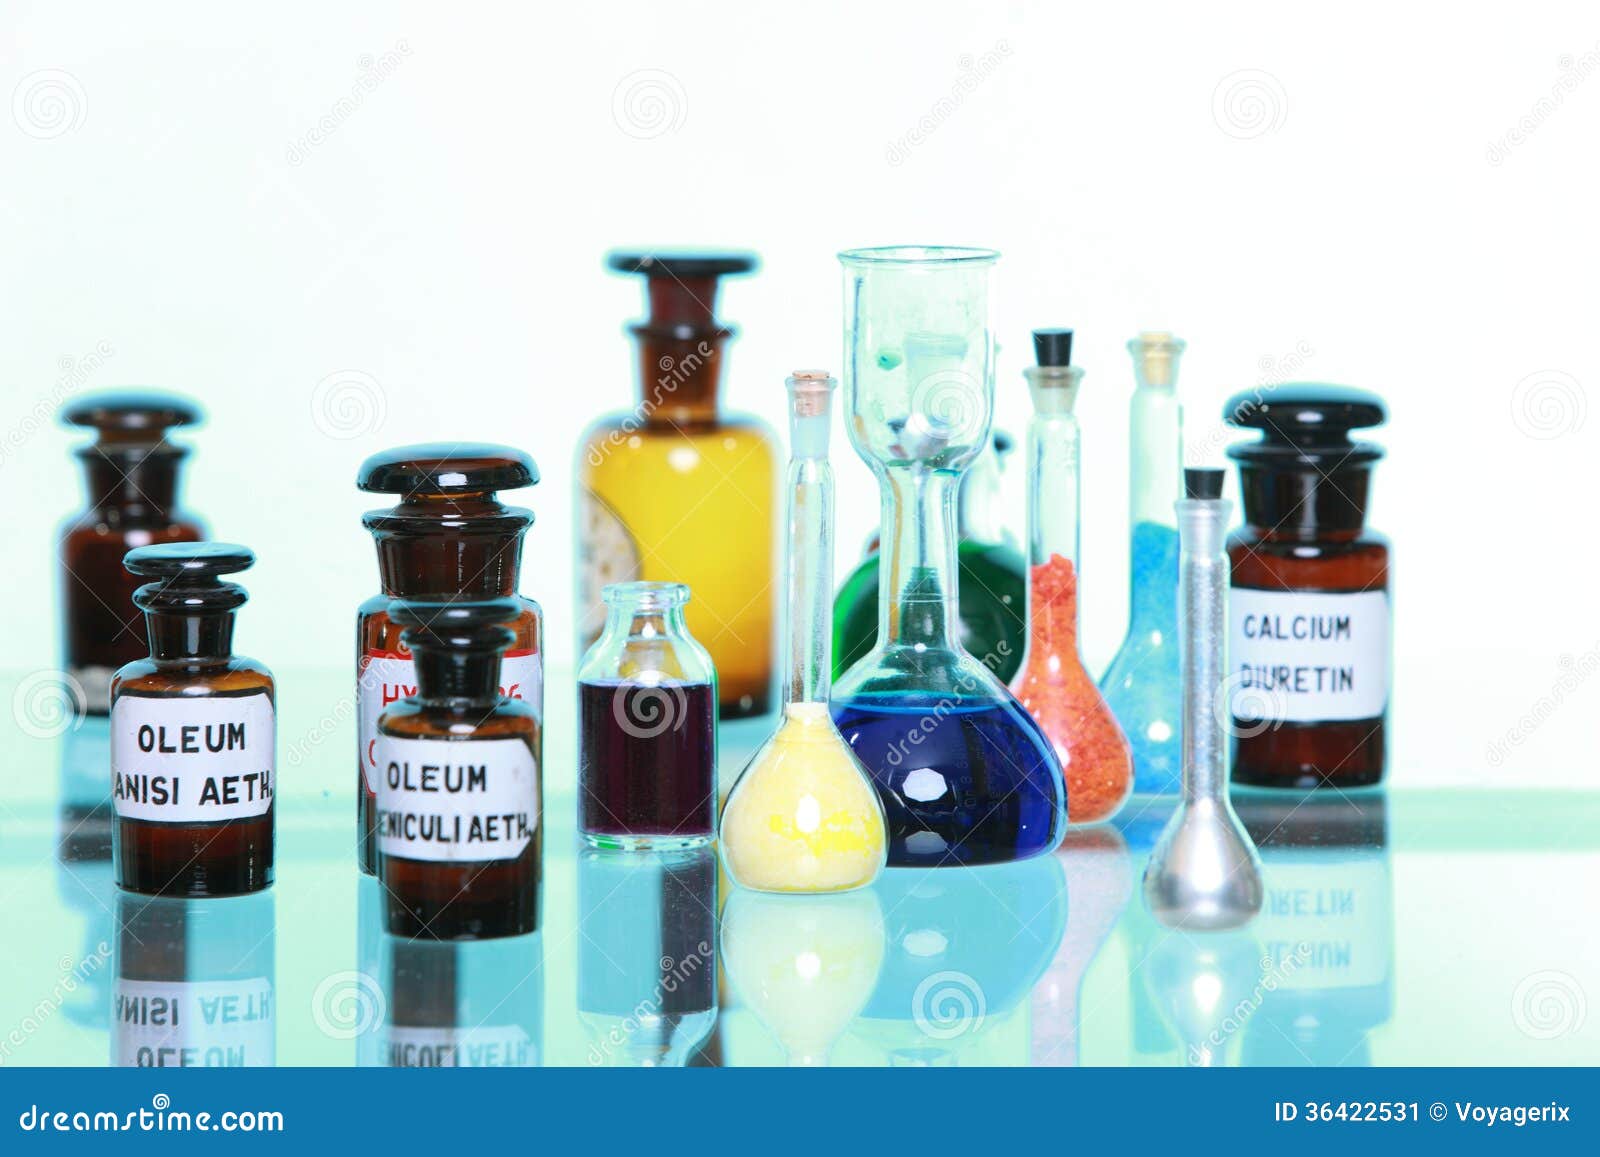 various pharmacy medicine bottles 